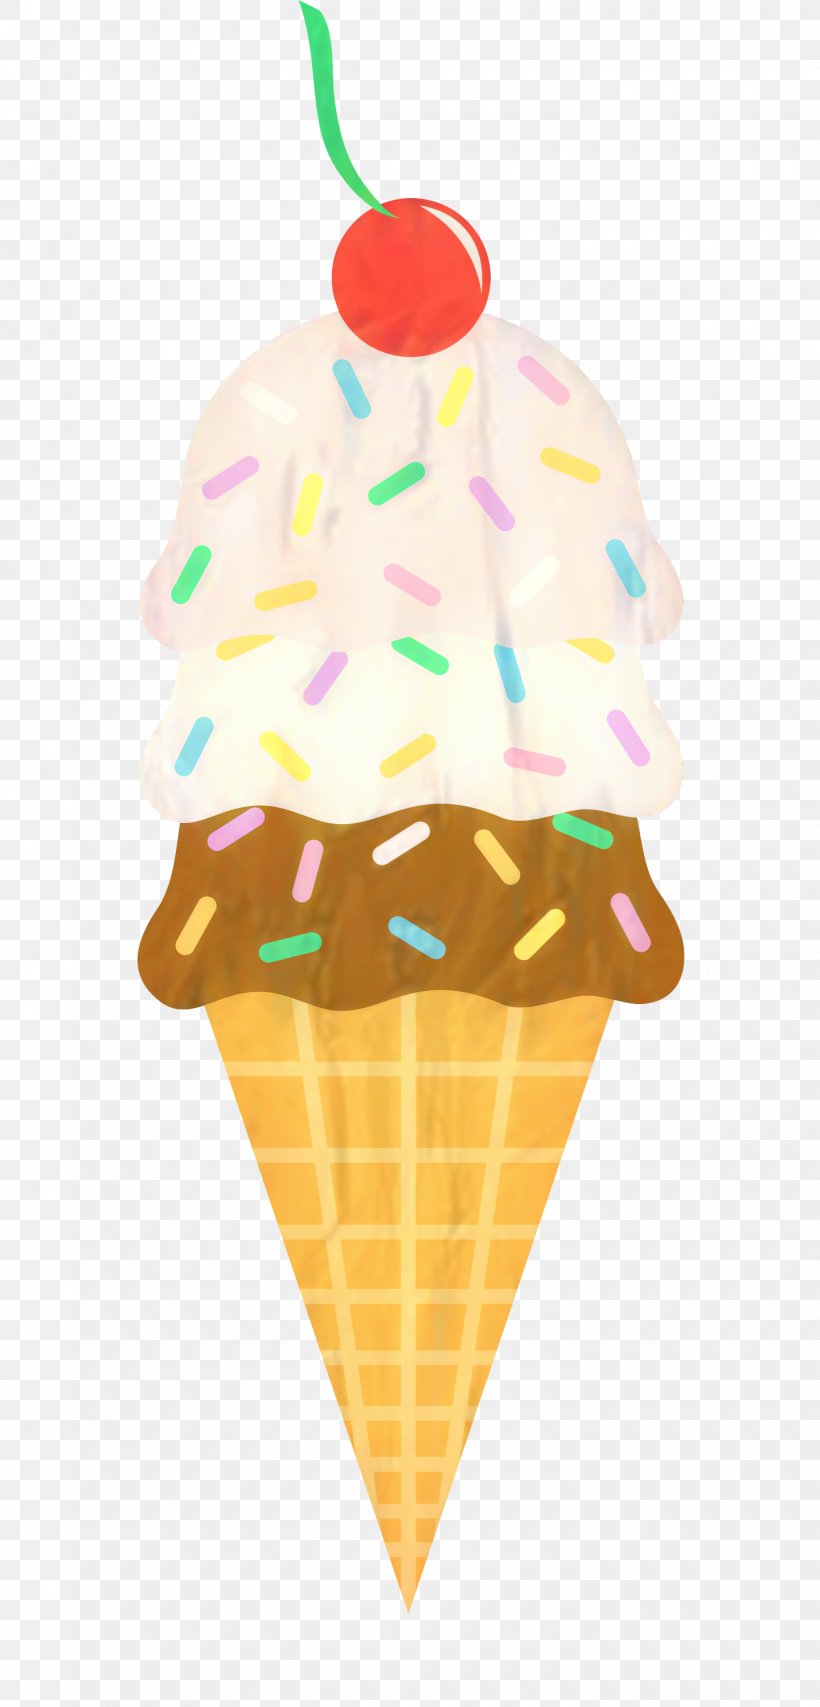 Ice Cream Cones Sundae Clip Art, PNG, 1440x2999px, Ice Cream Cones, Cone, Cream, Cuisine, Dairy Download Free